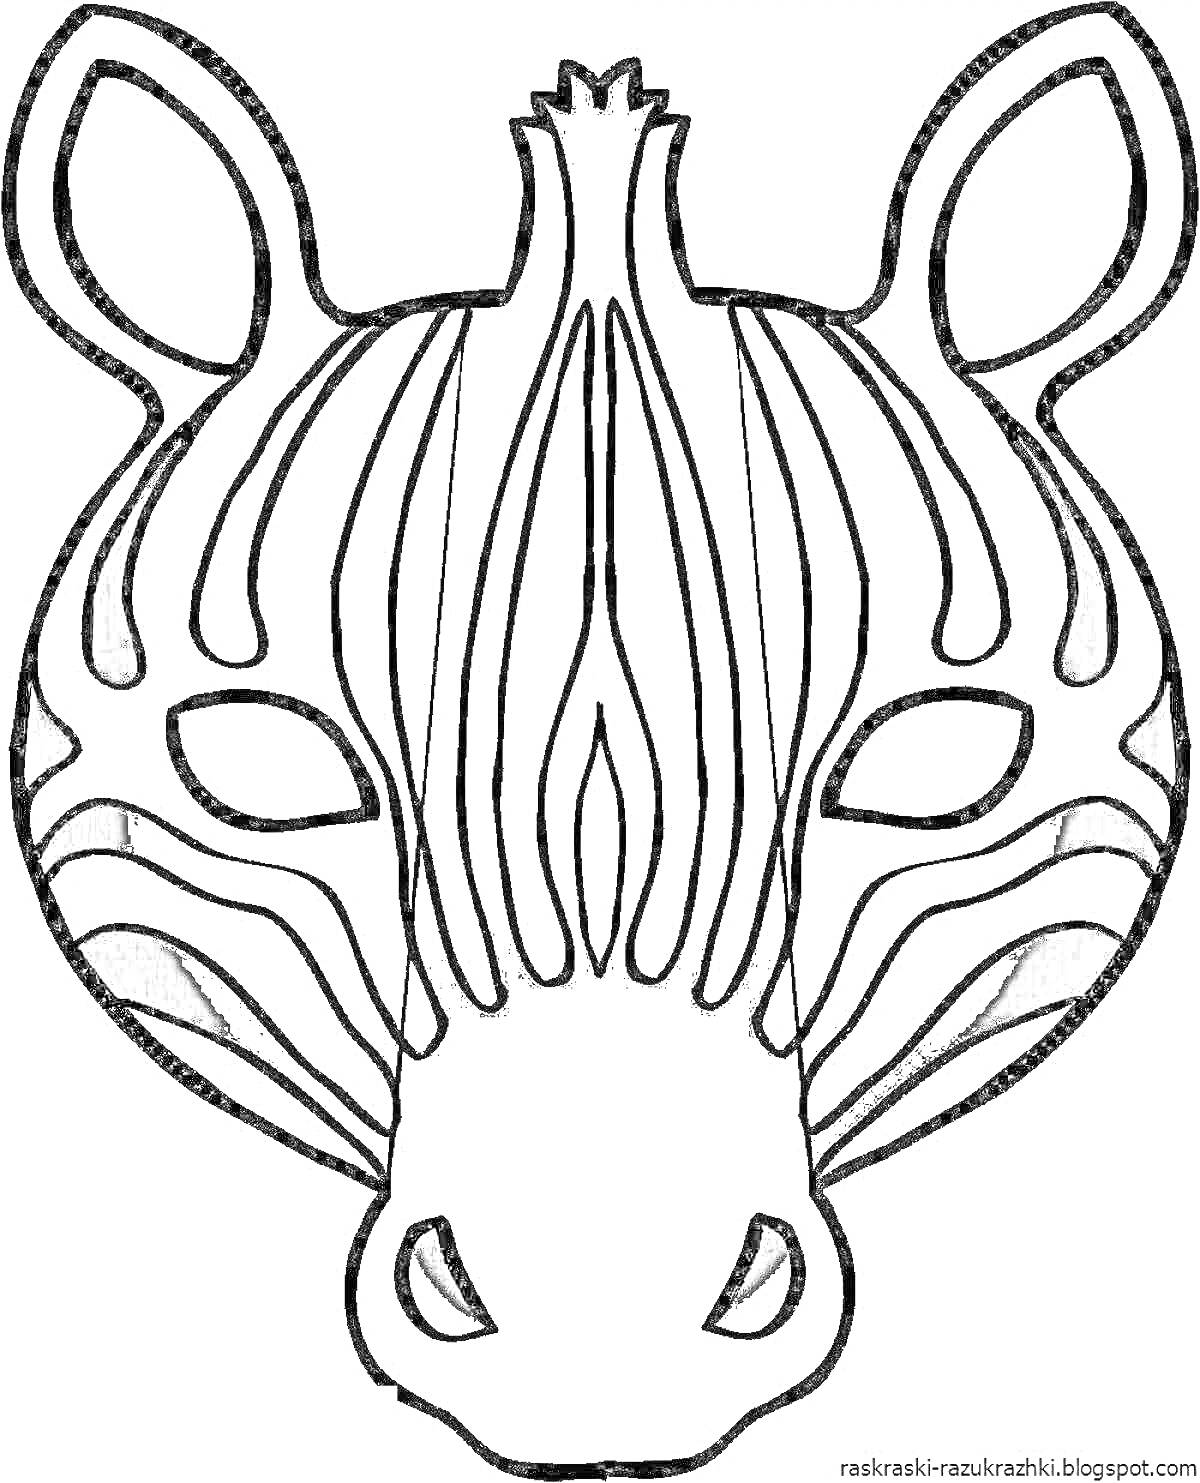 Раскраска Маска зебры с полосами и ушами